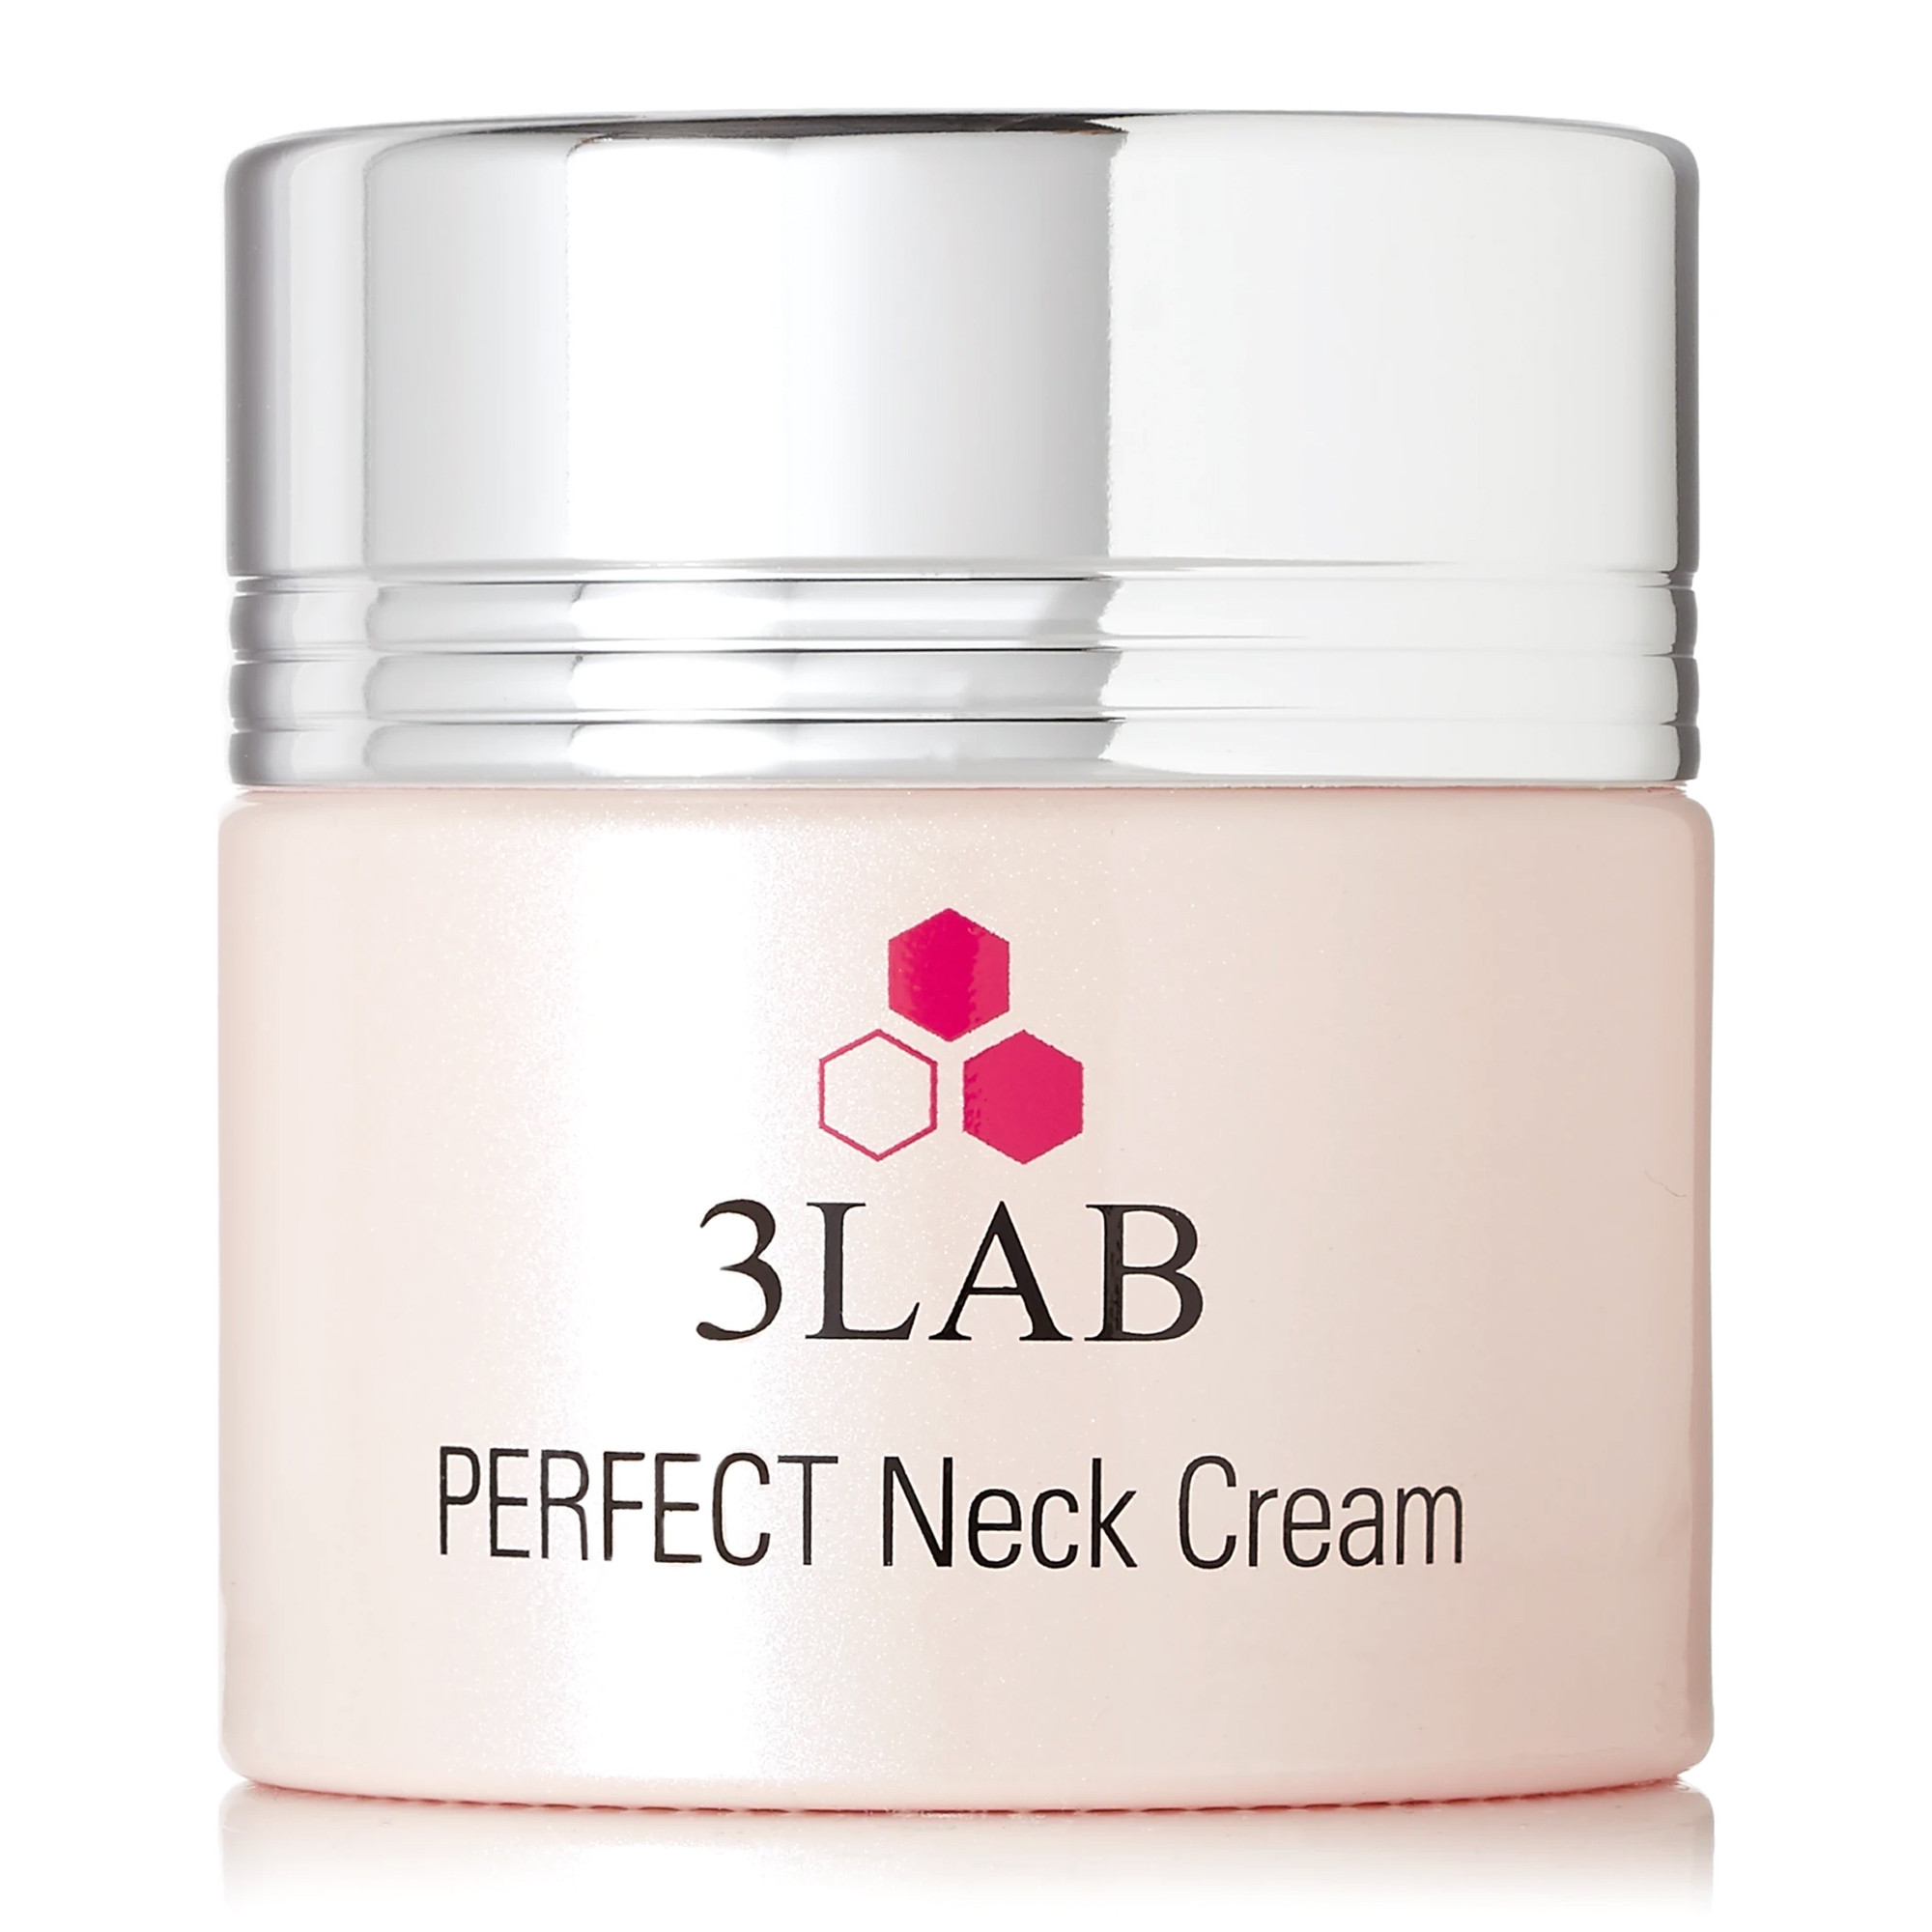 Відгуки про 3LAB Perfect Neck Cream Крем для шеи